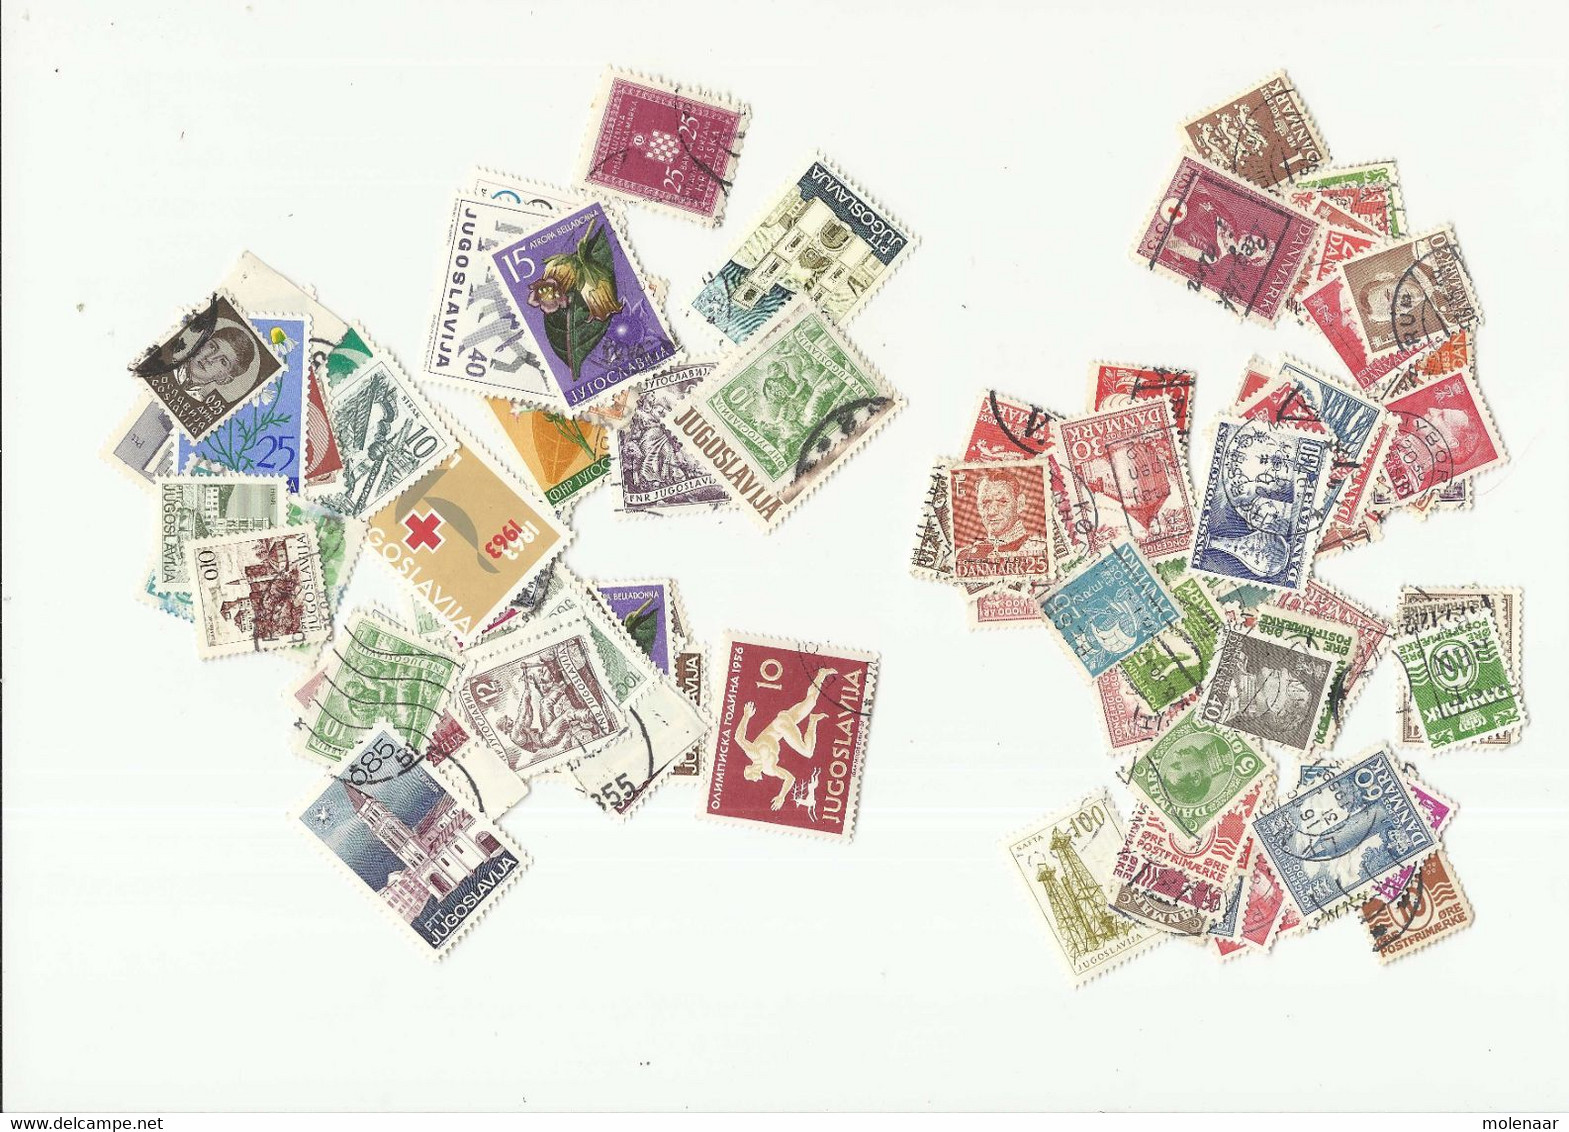 Sigarenkist vol met zakjes afgeweekte postzegels totall 125gram  (8356)